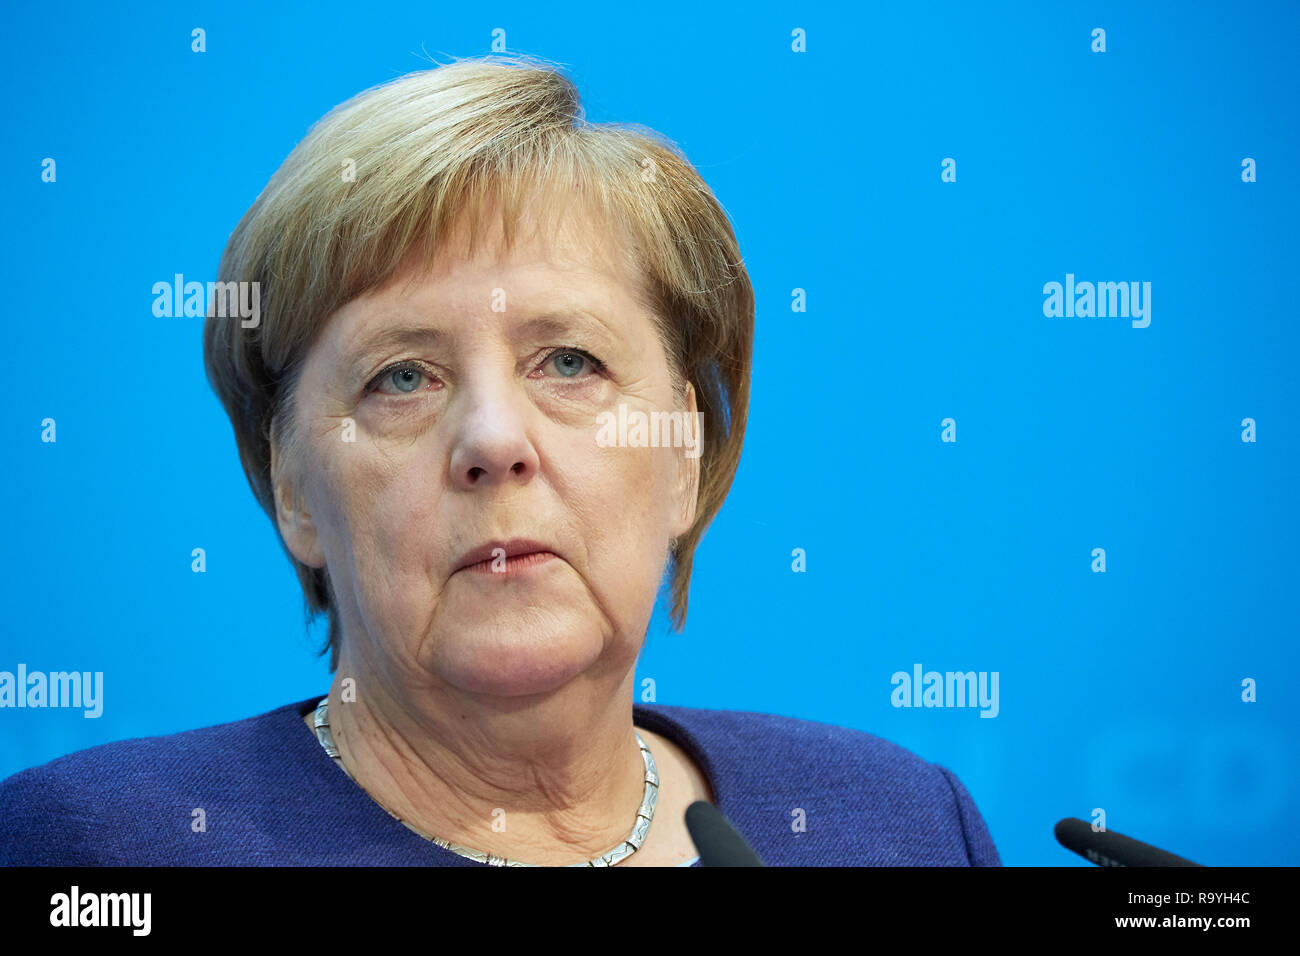 05.11.2018, Berlin, Deutschland - Angela Merkel - Vorsitzende der CDU Deutschlands bei einer Pressekonferenz. 00R181105D134CARO.JPG [MODEL RELEASE: NO Stock Photo